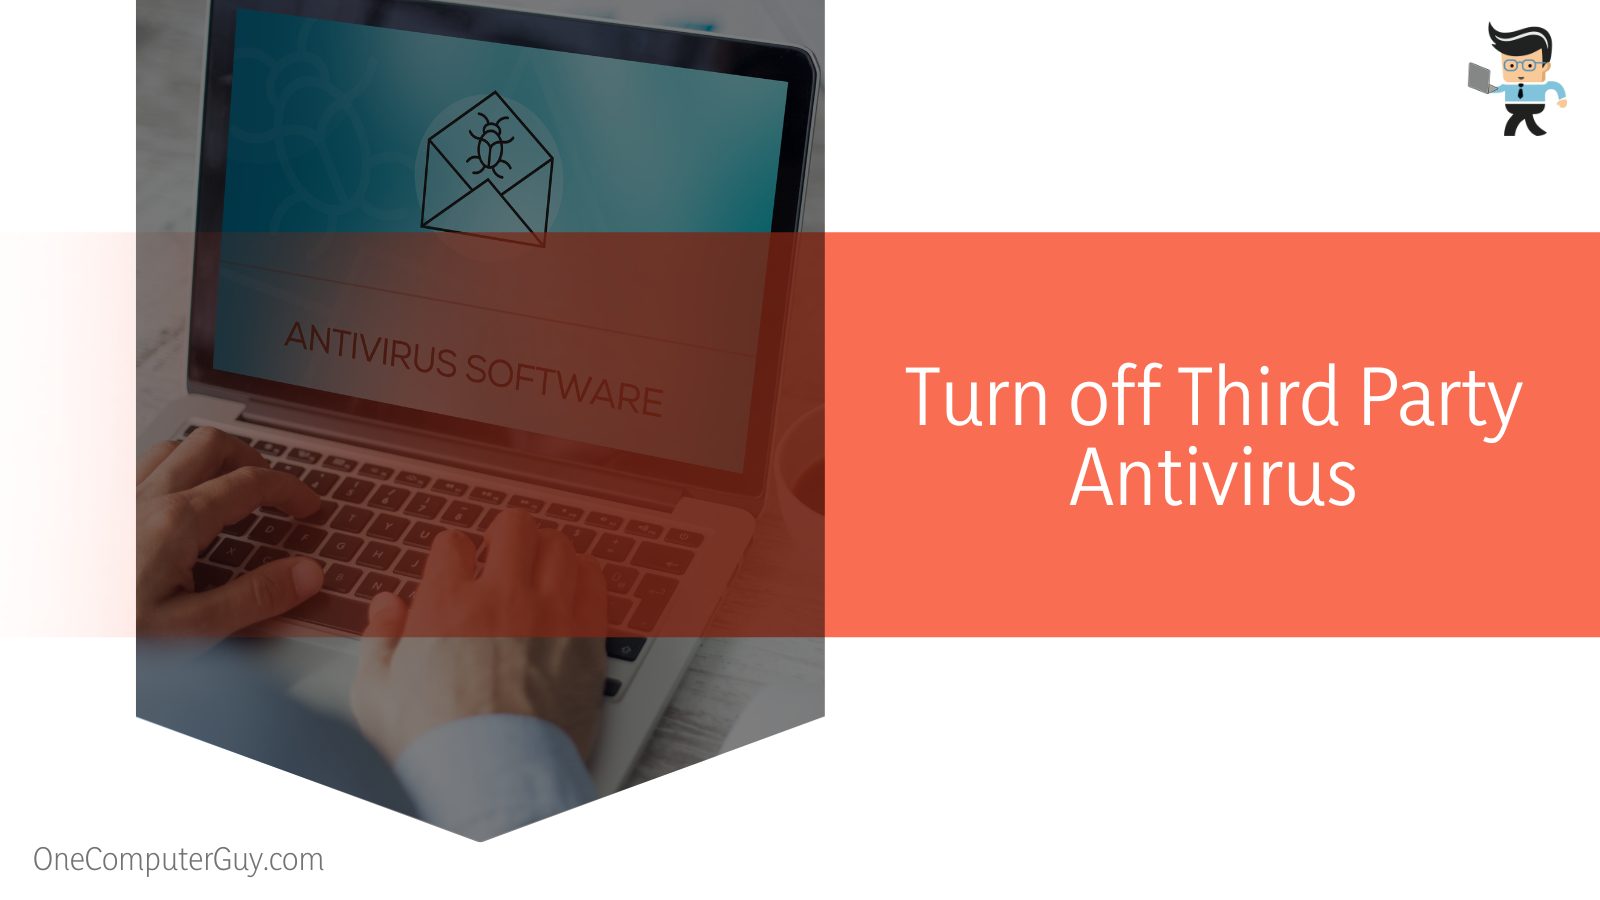 Turn off Third Party Antivirus